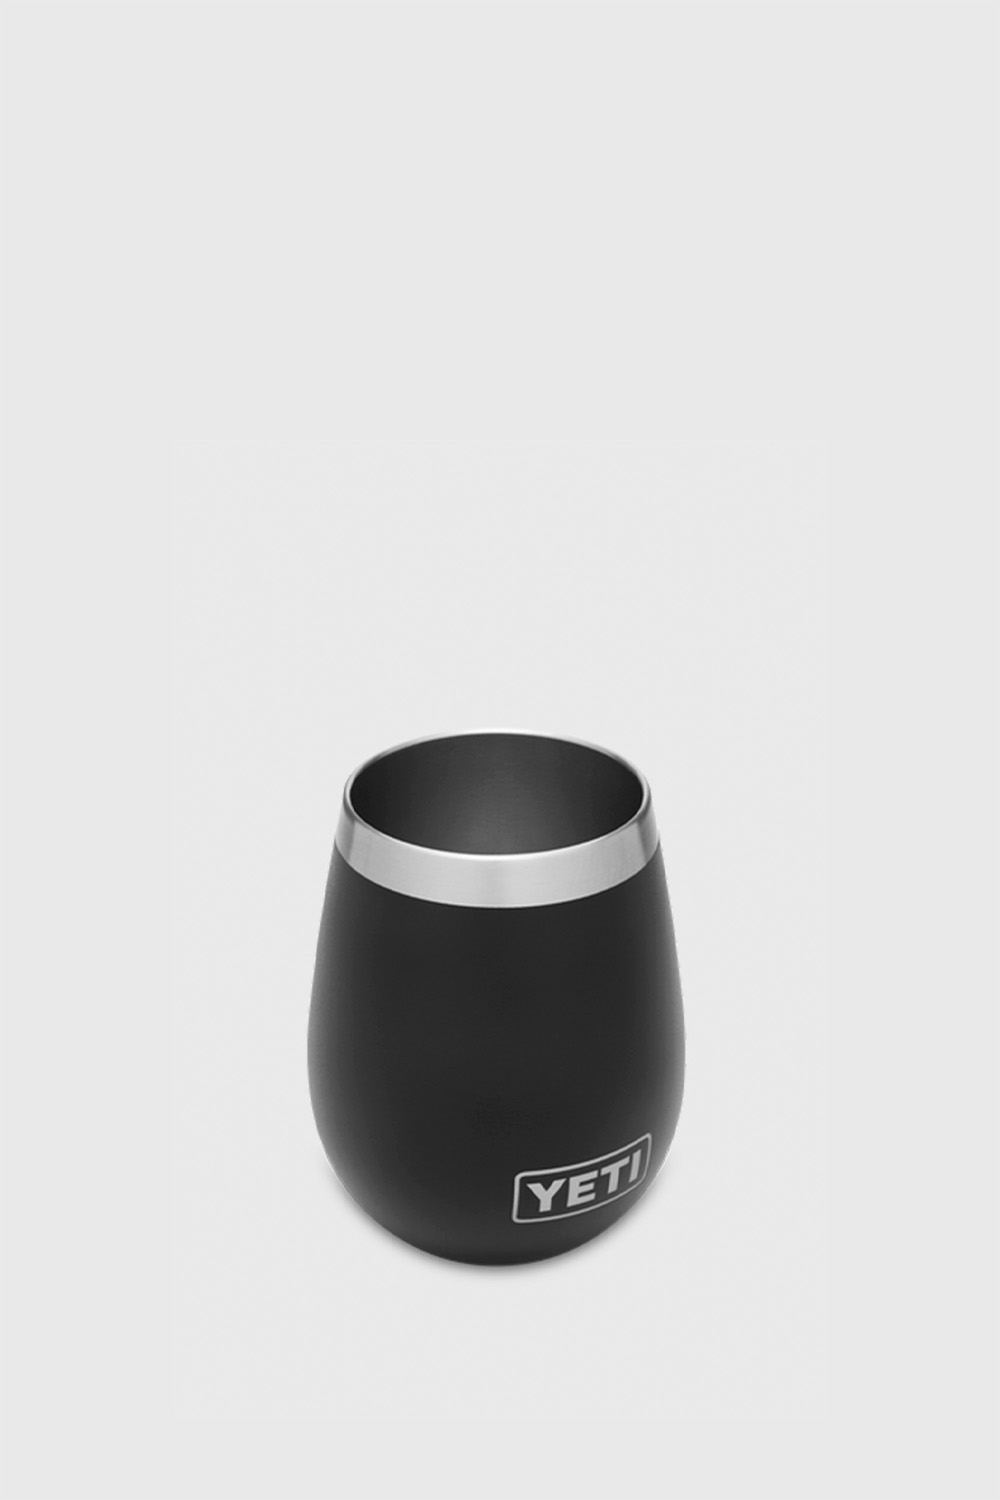 Yeti Rambler 10 oz Wine Tumbler - Black - One Size - Unisex